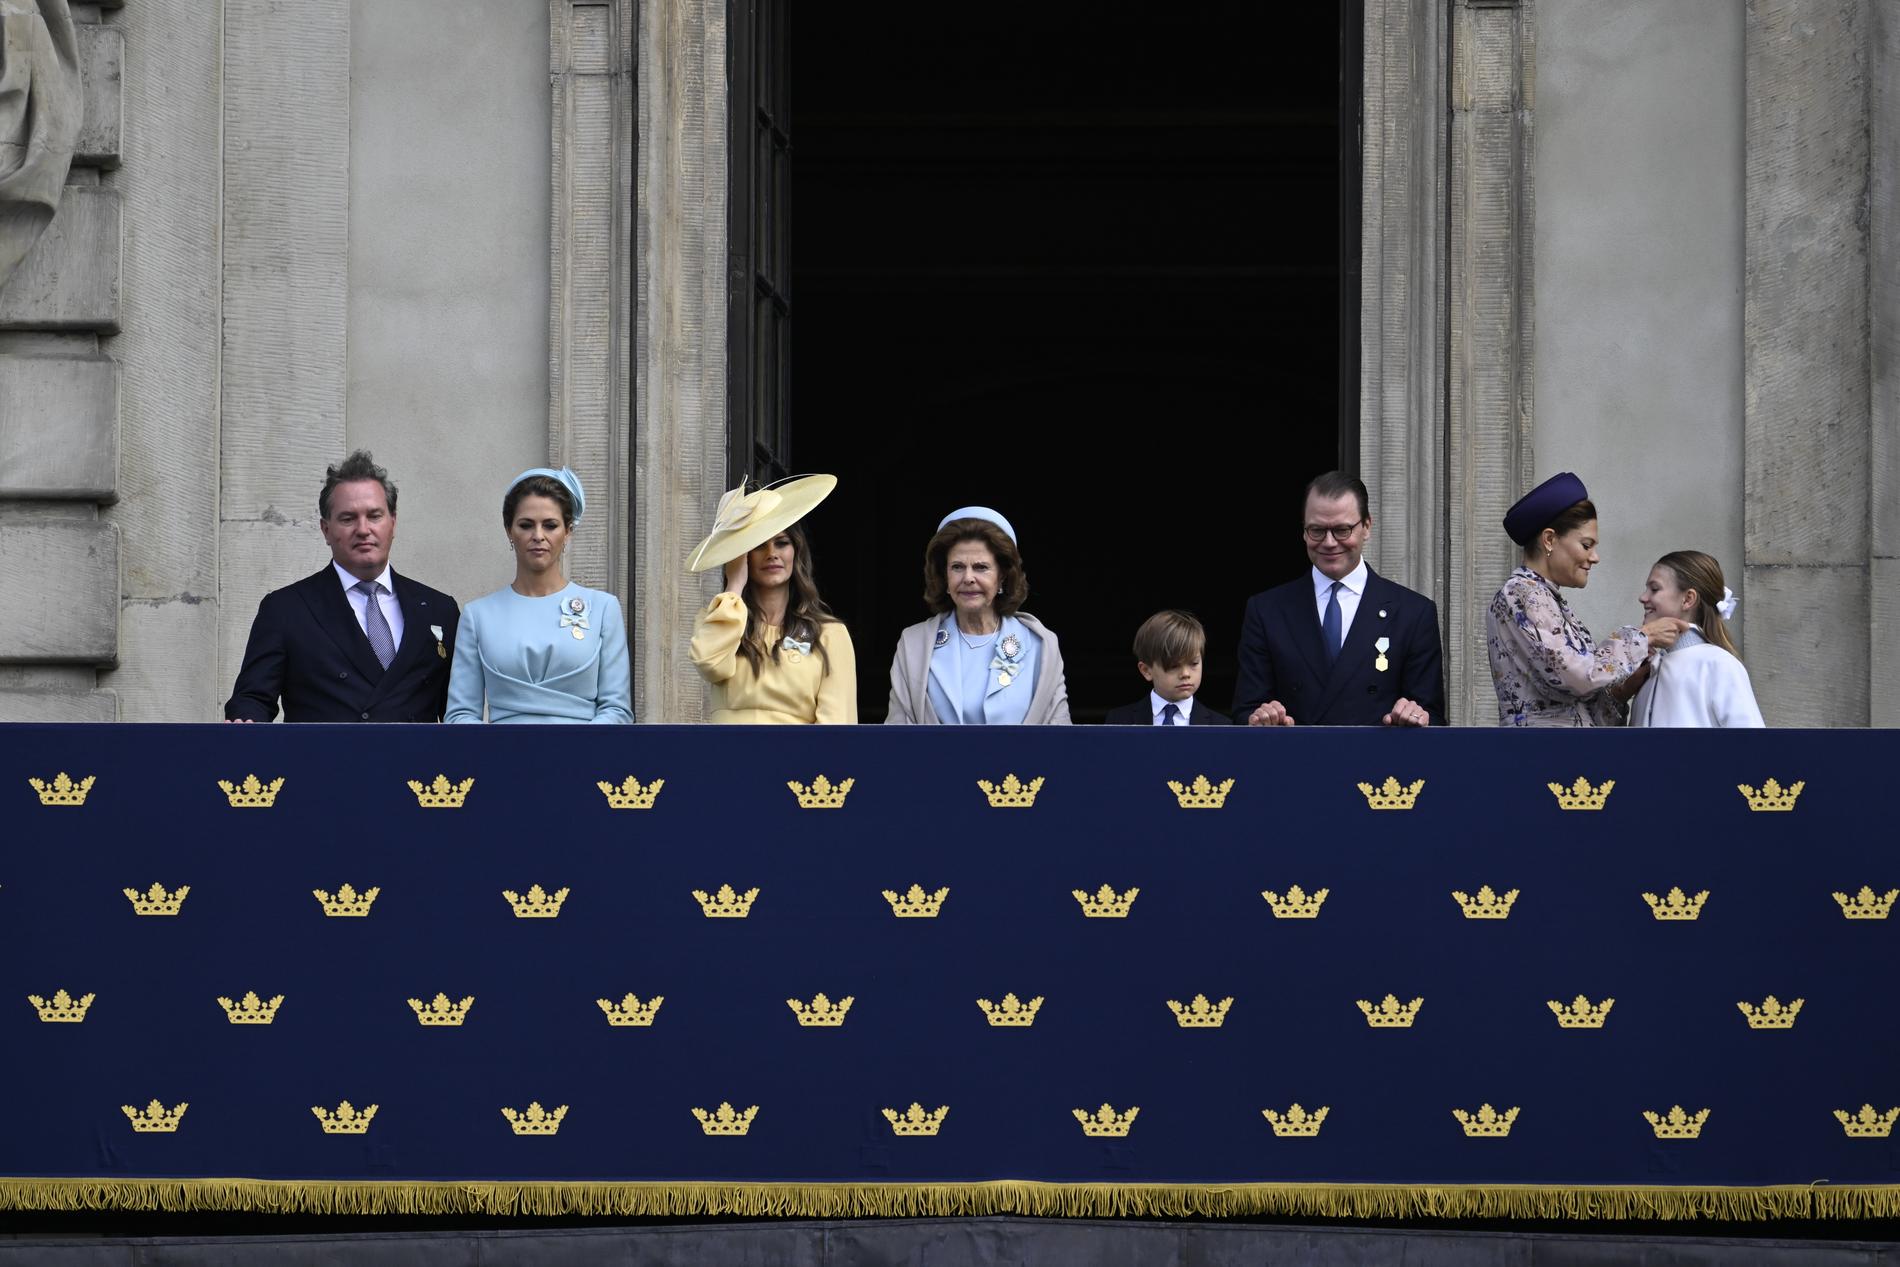 Chris O'Neill, prinsessan Madeleine, prinsessan Sofia drottning, Silvia, prins Oscar, prins Daniel, kronprinsessan Victoria och prinsessan Estelle tittar på från balkonen under högvaktsavlösningen.